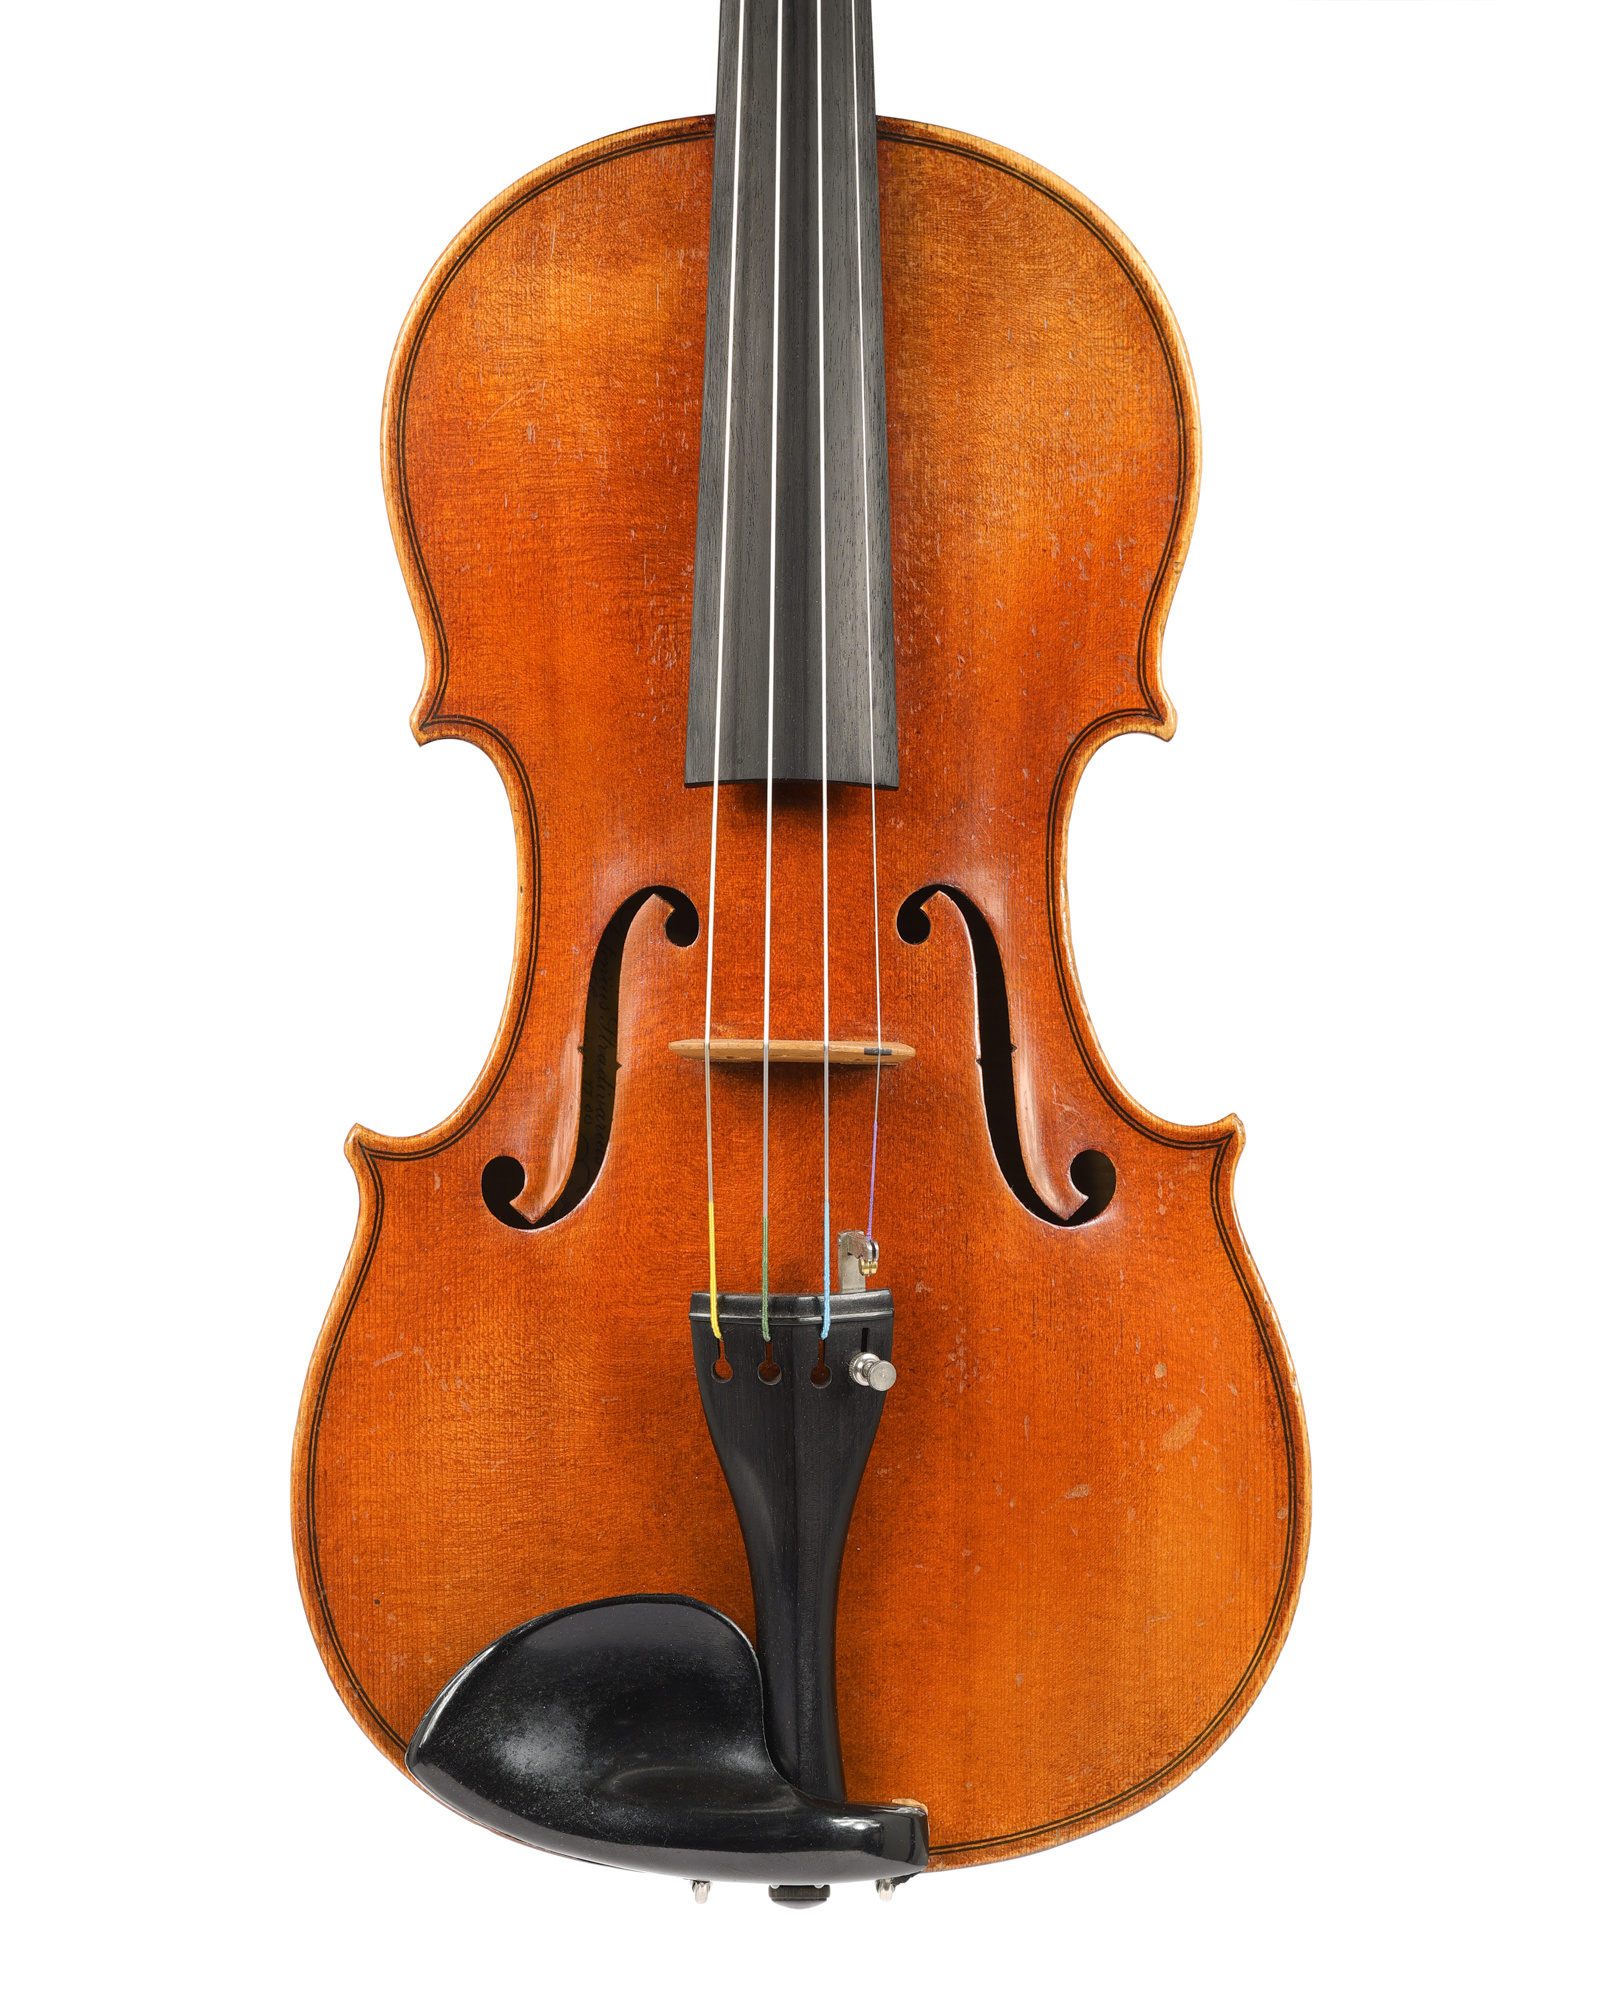 Ernst Heinrich Roth 4/4 violin, 1952, Strad 1700 model, #122-52, Markneukirchen, Germany